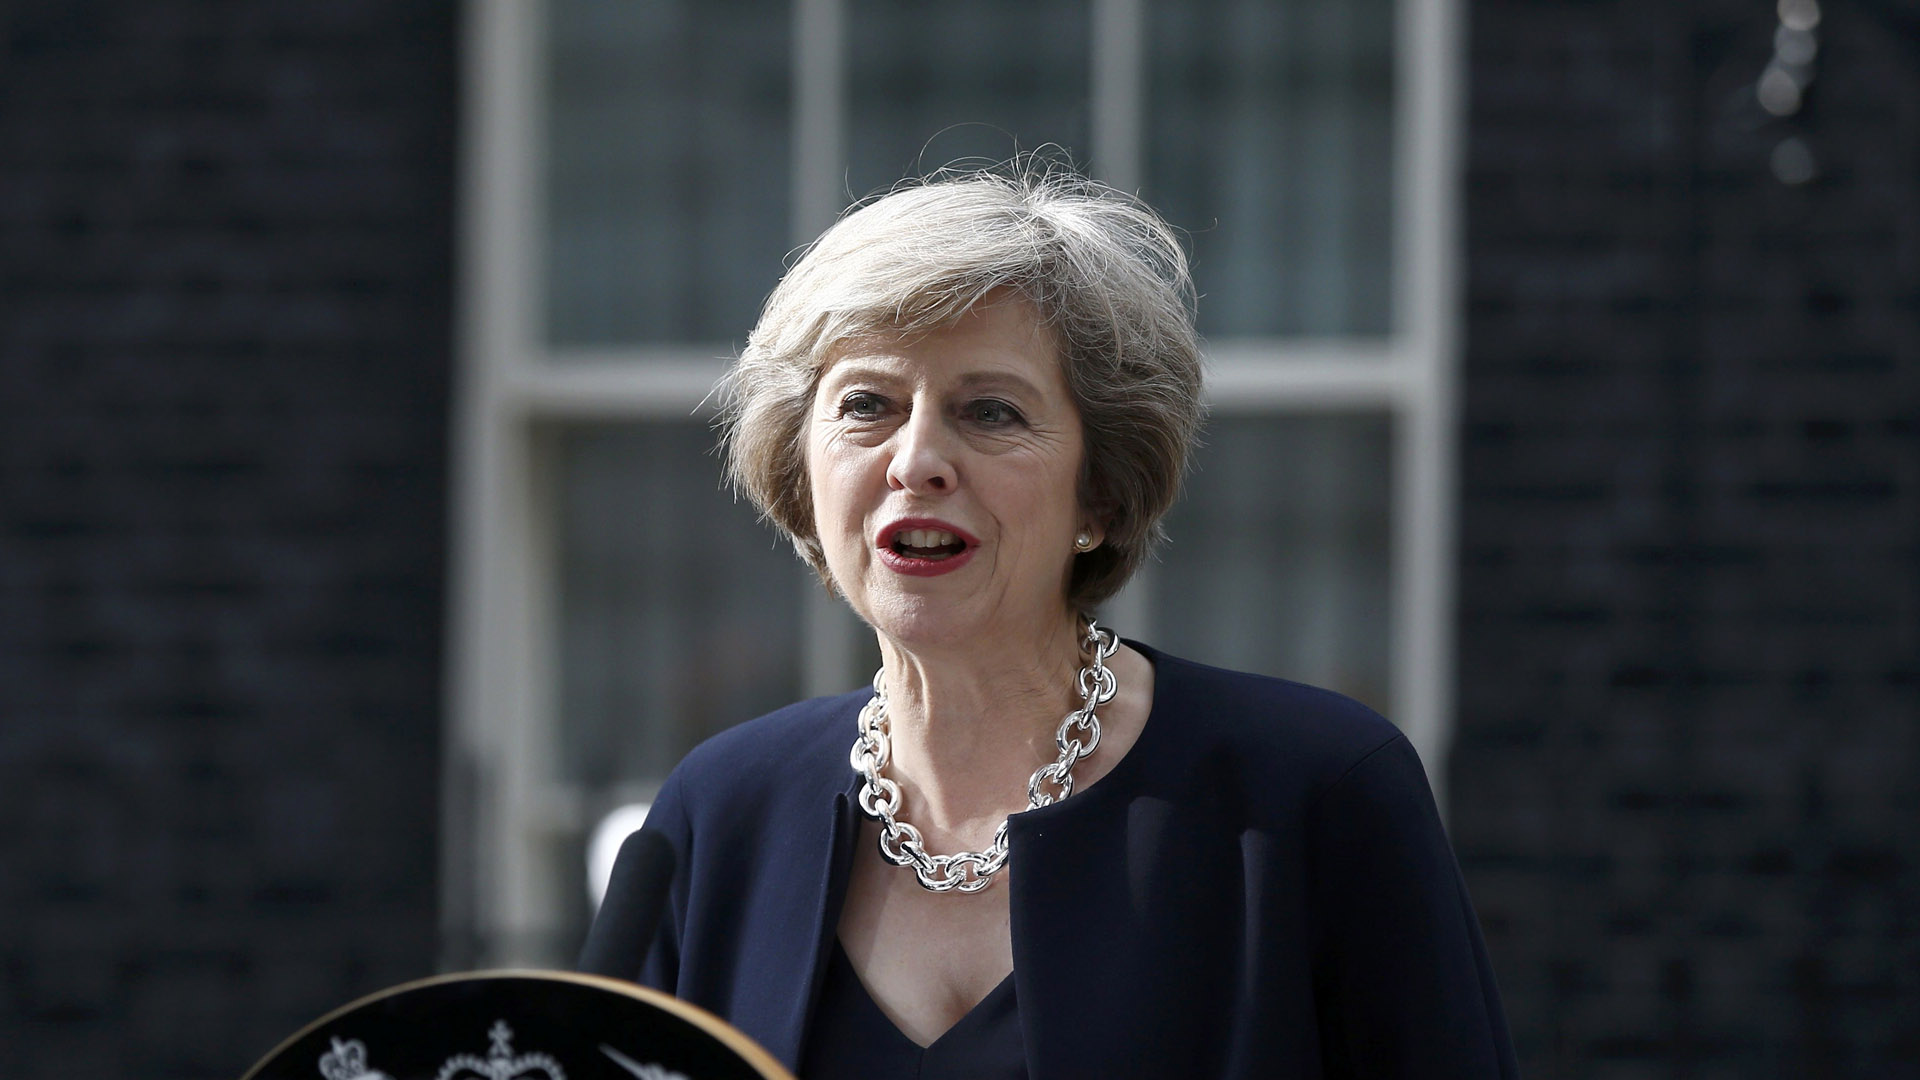 "Debemos vencer a esos brutales asesinos que quieren destruir nuestro modo de vida", dijo la nueva primera ministra británica